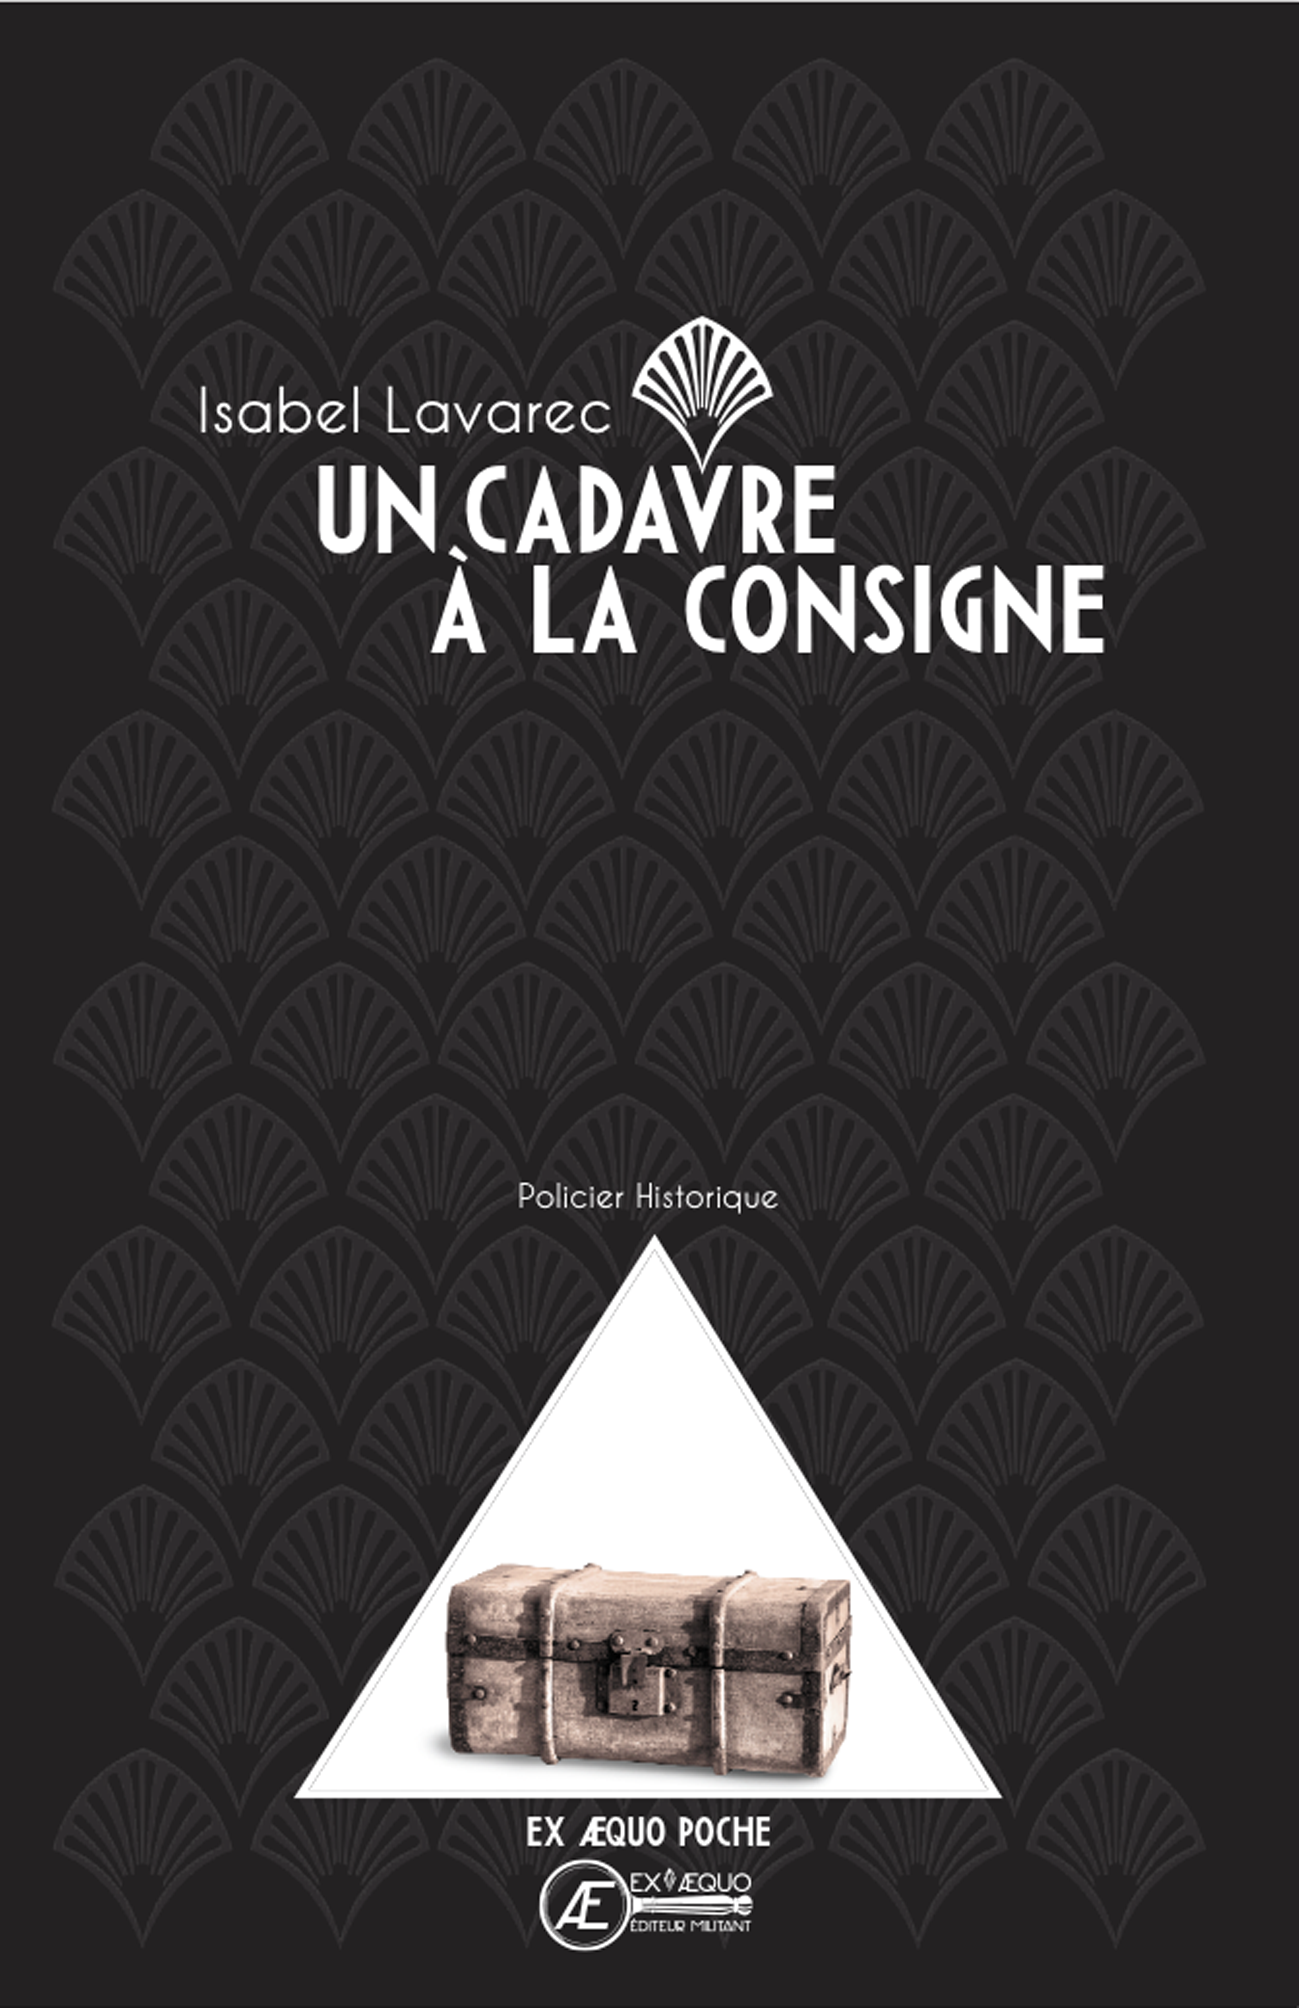 You are currently viewing Un cadavre à la consigne – Poche, d’Isabel Lavarec